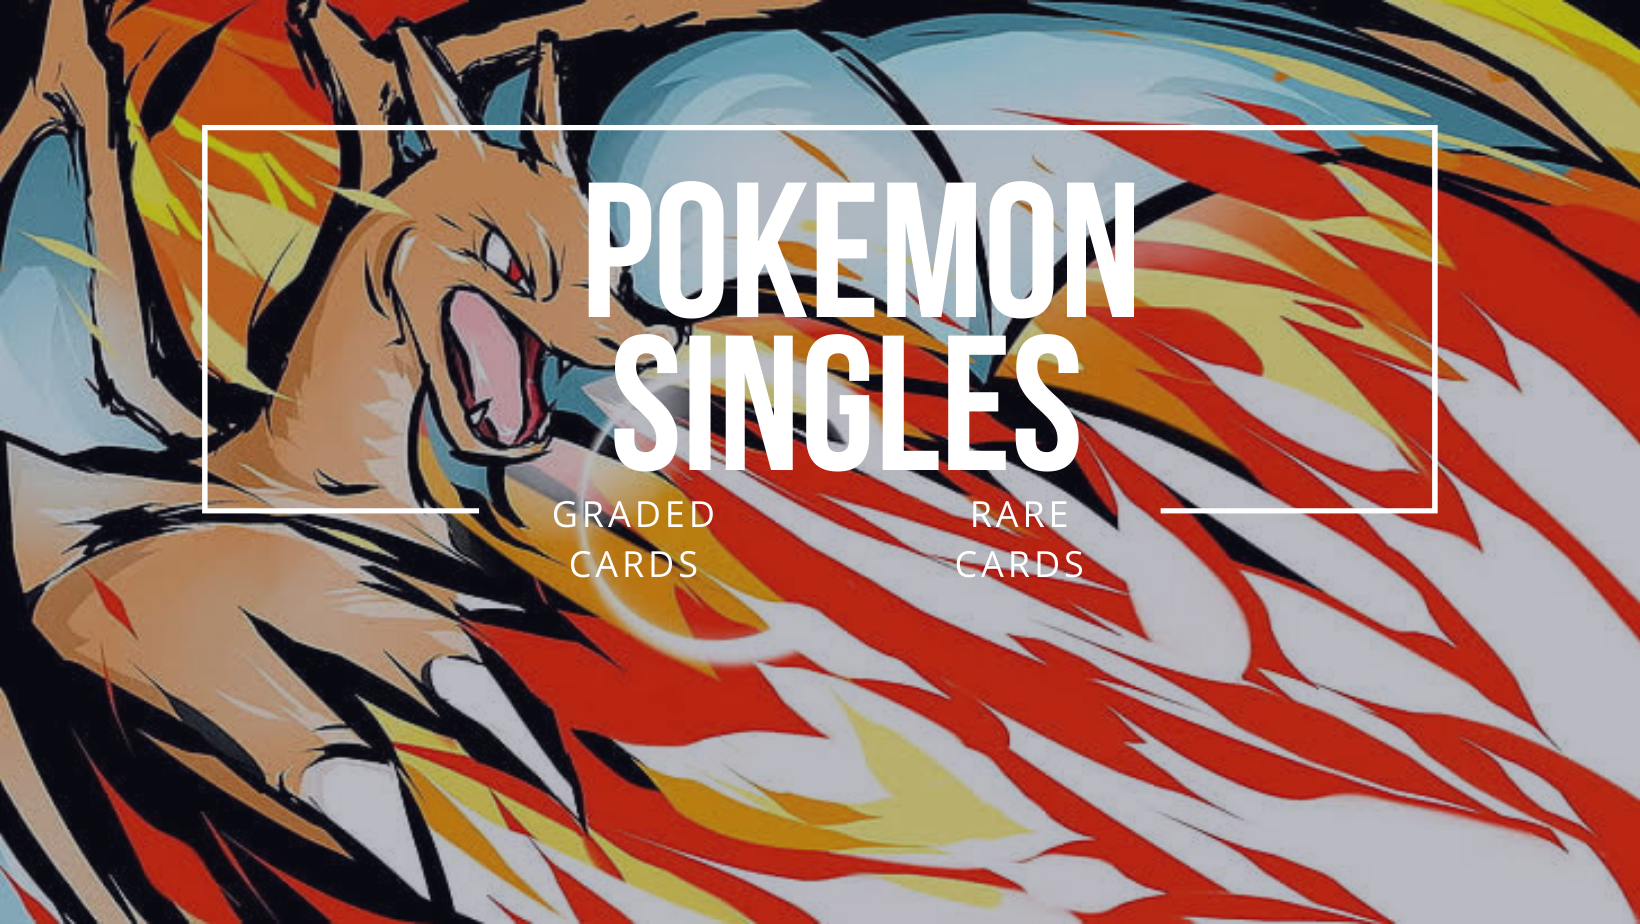 Pokemon Singles